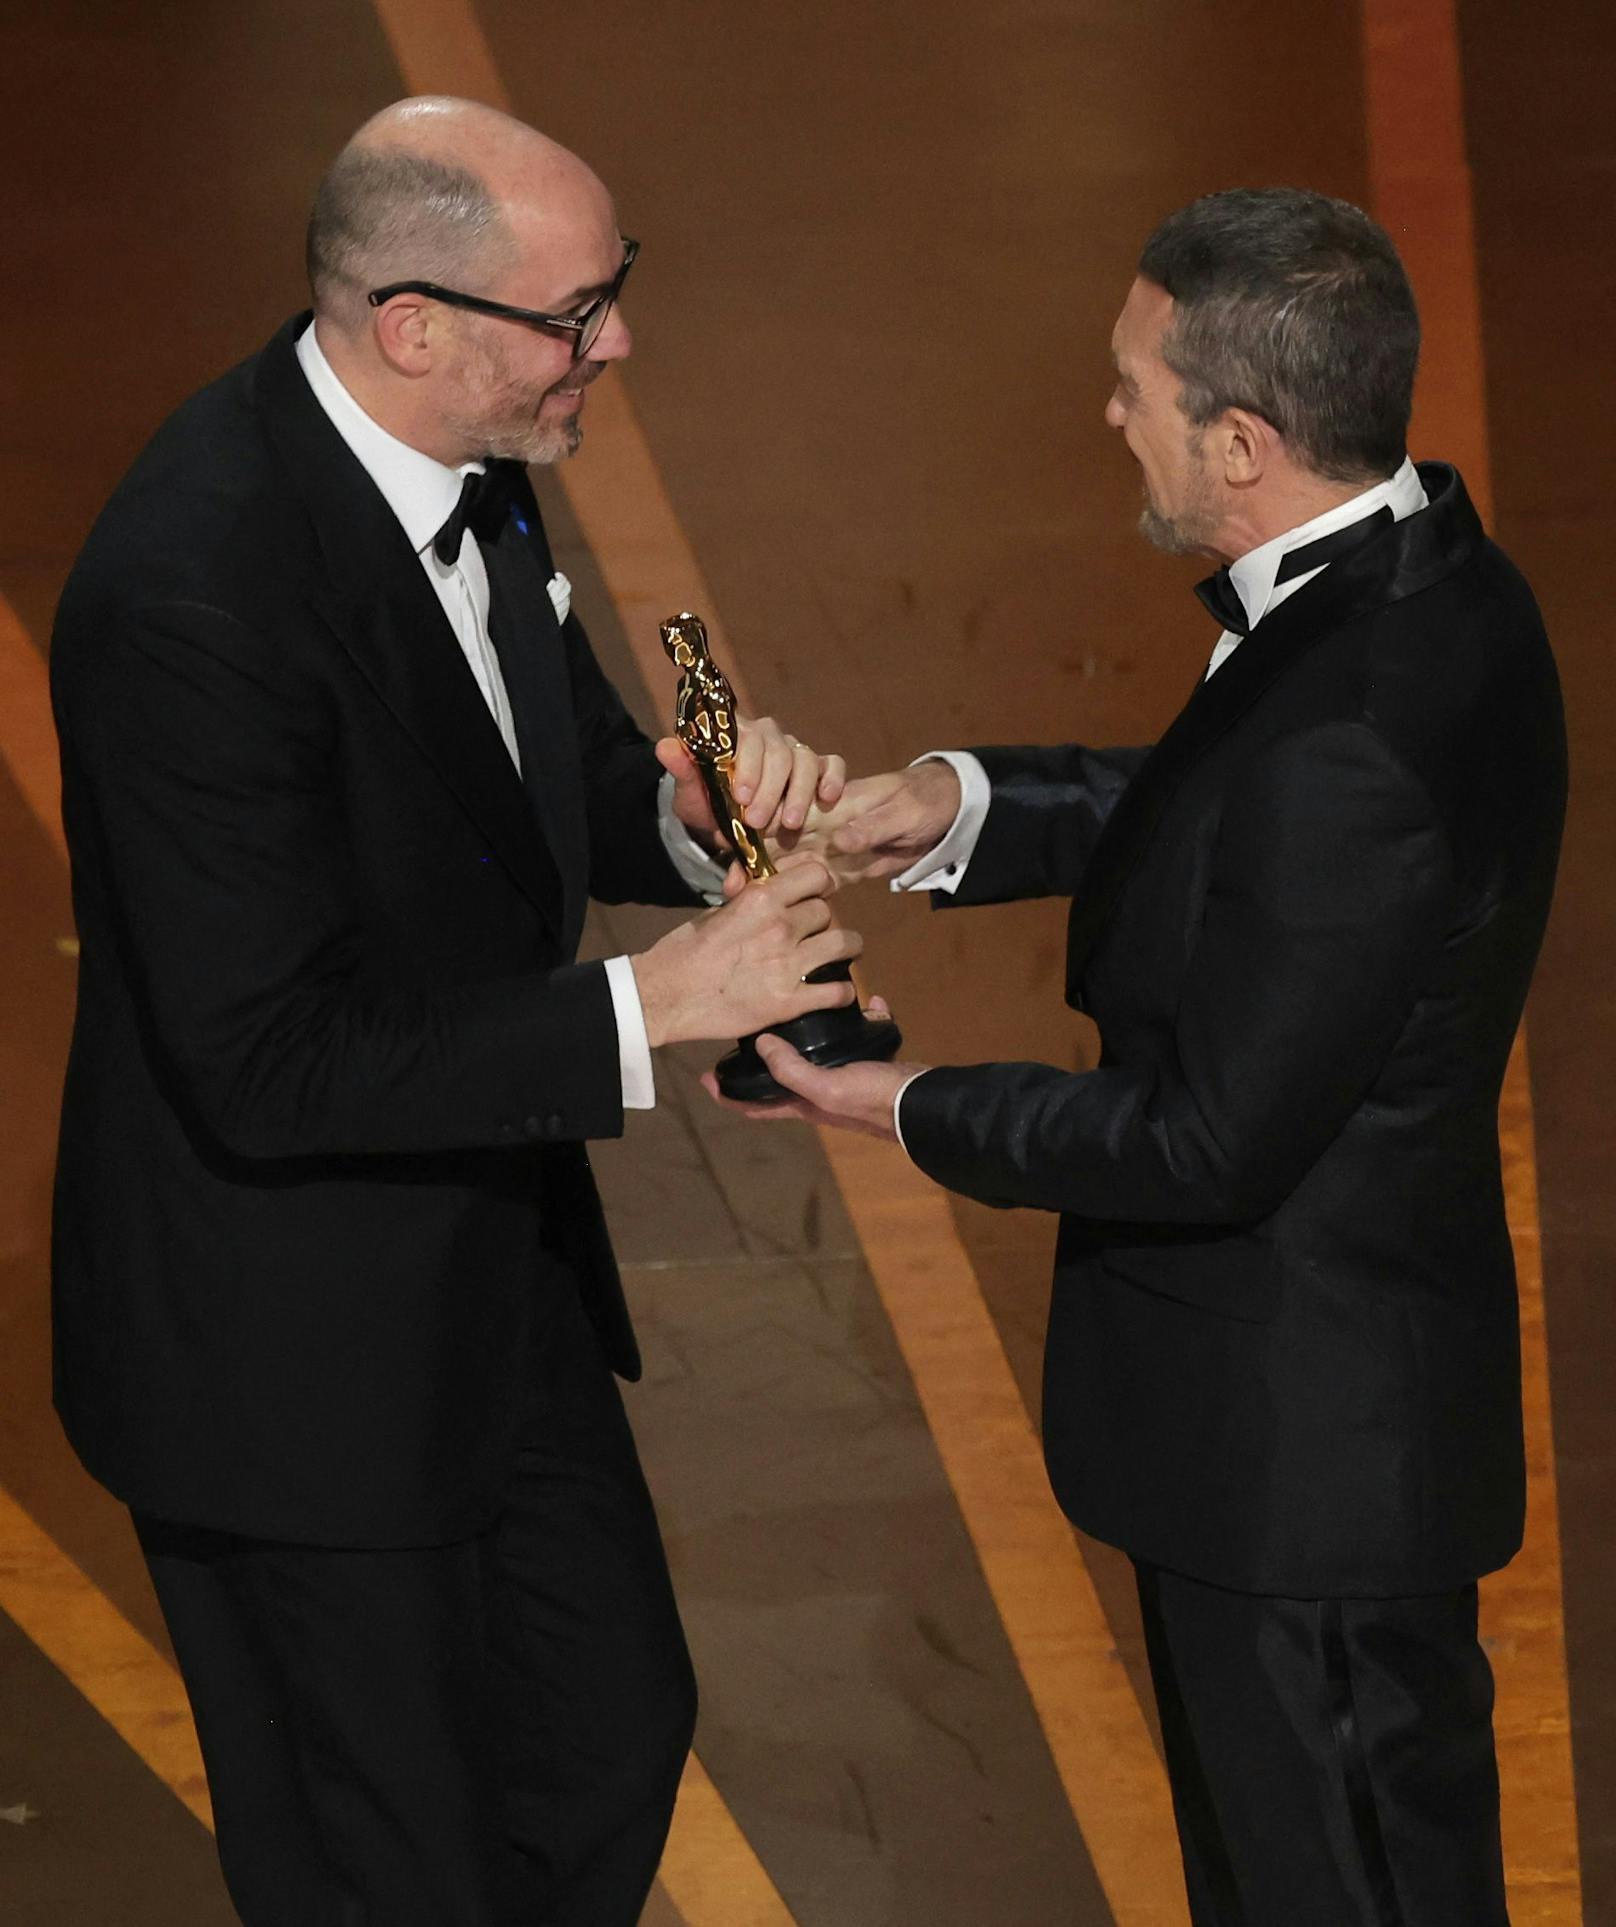 Regisseur Edward Berger erhält den Oscar für "Bester fremdsprachiger Film". ("Im Westen nichts Neues")